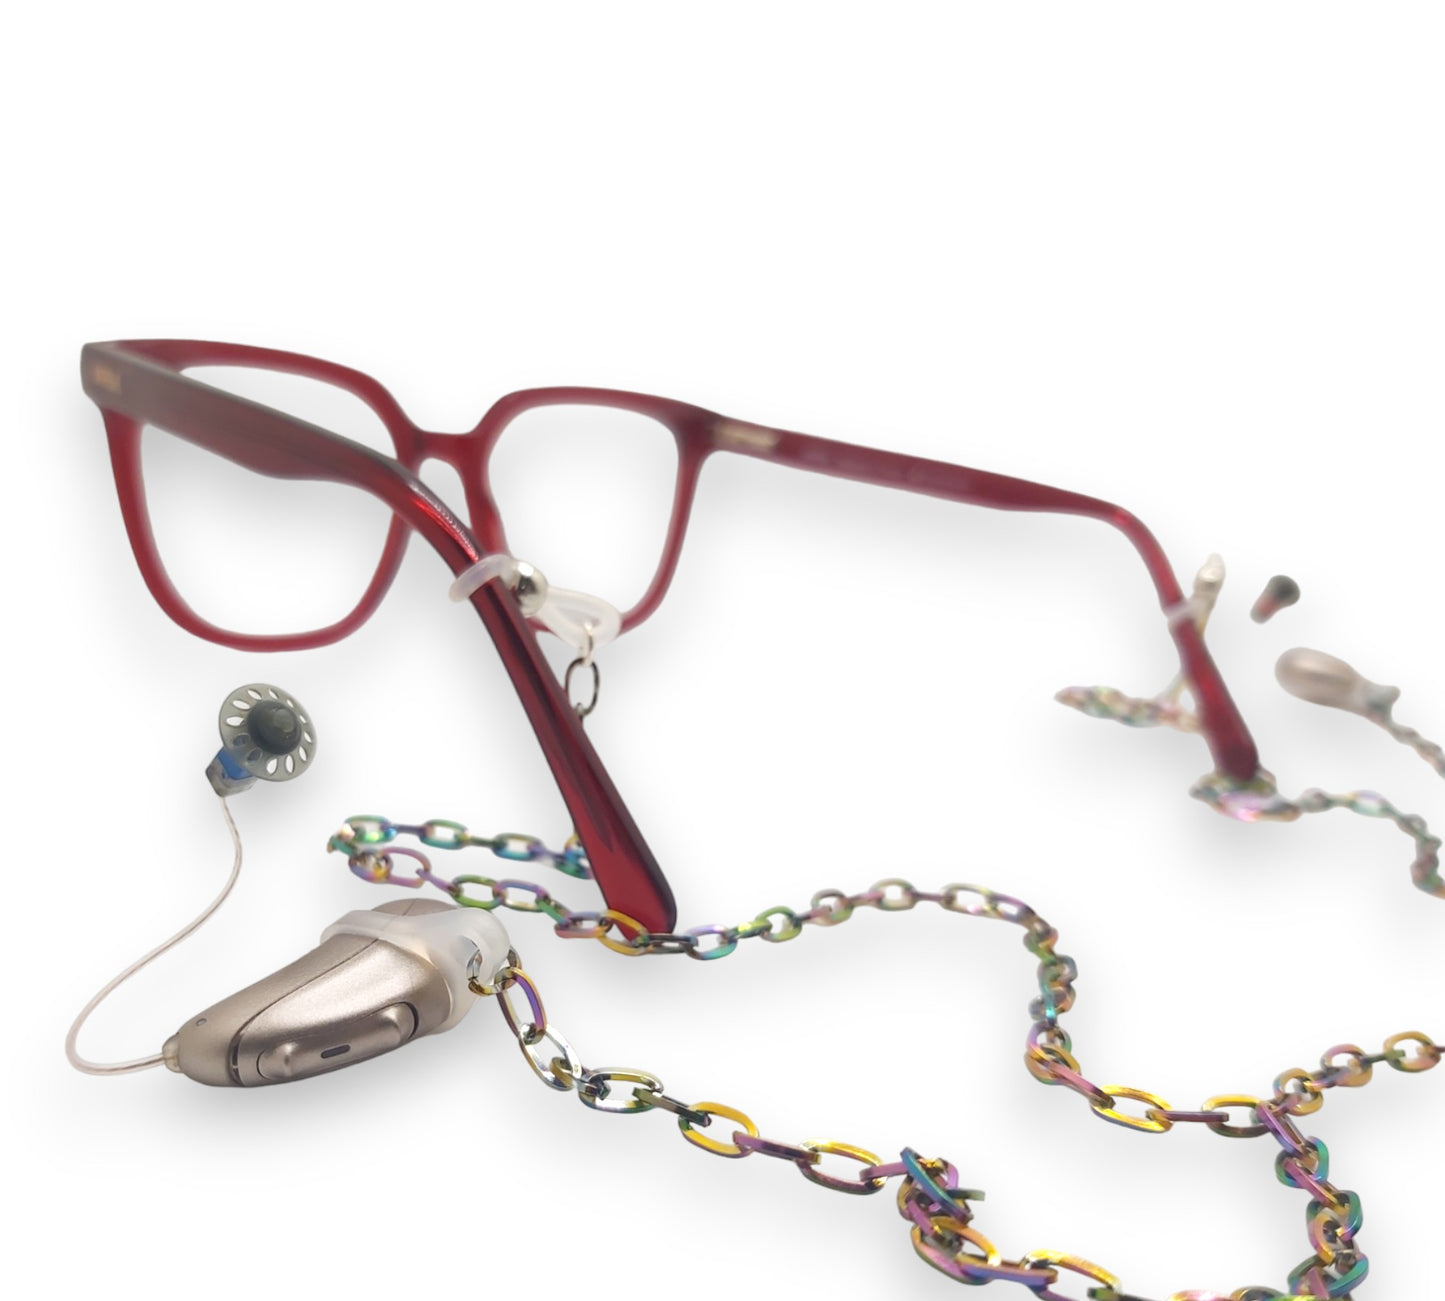 Chaîne de lunettes arc-en-ciel pour boucles et aides auditives